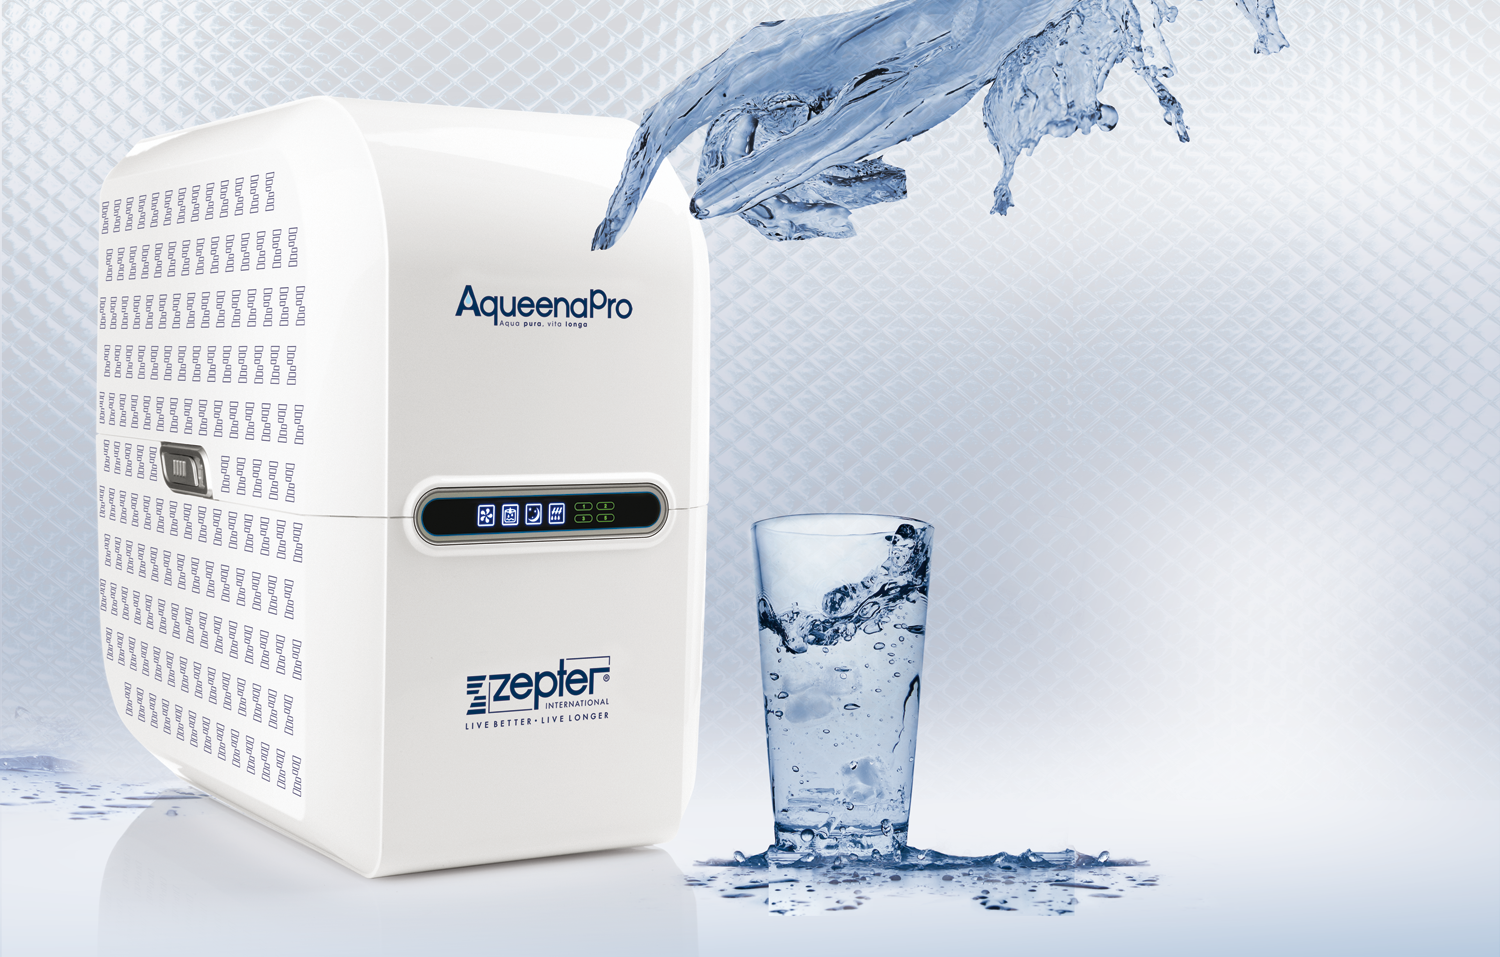 AqueenaPro - Pure, healthy water